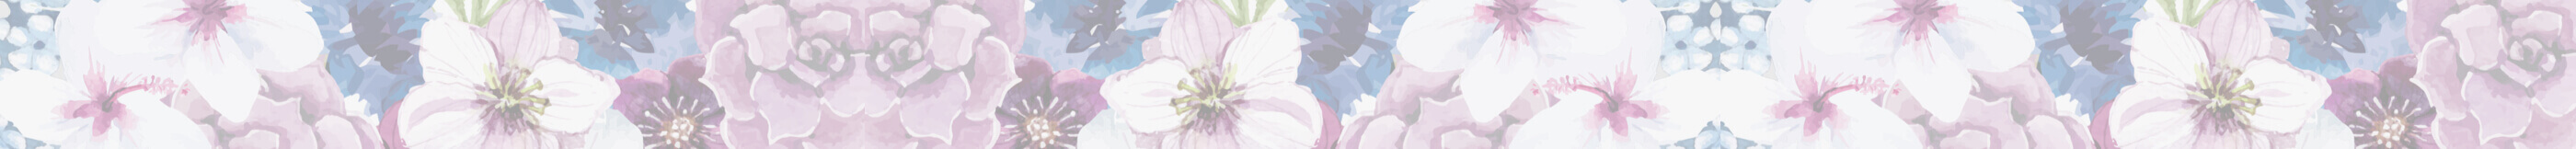 Flowers illustration. Desktop Image